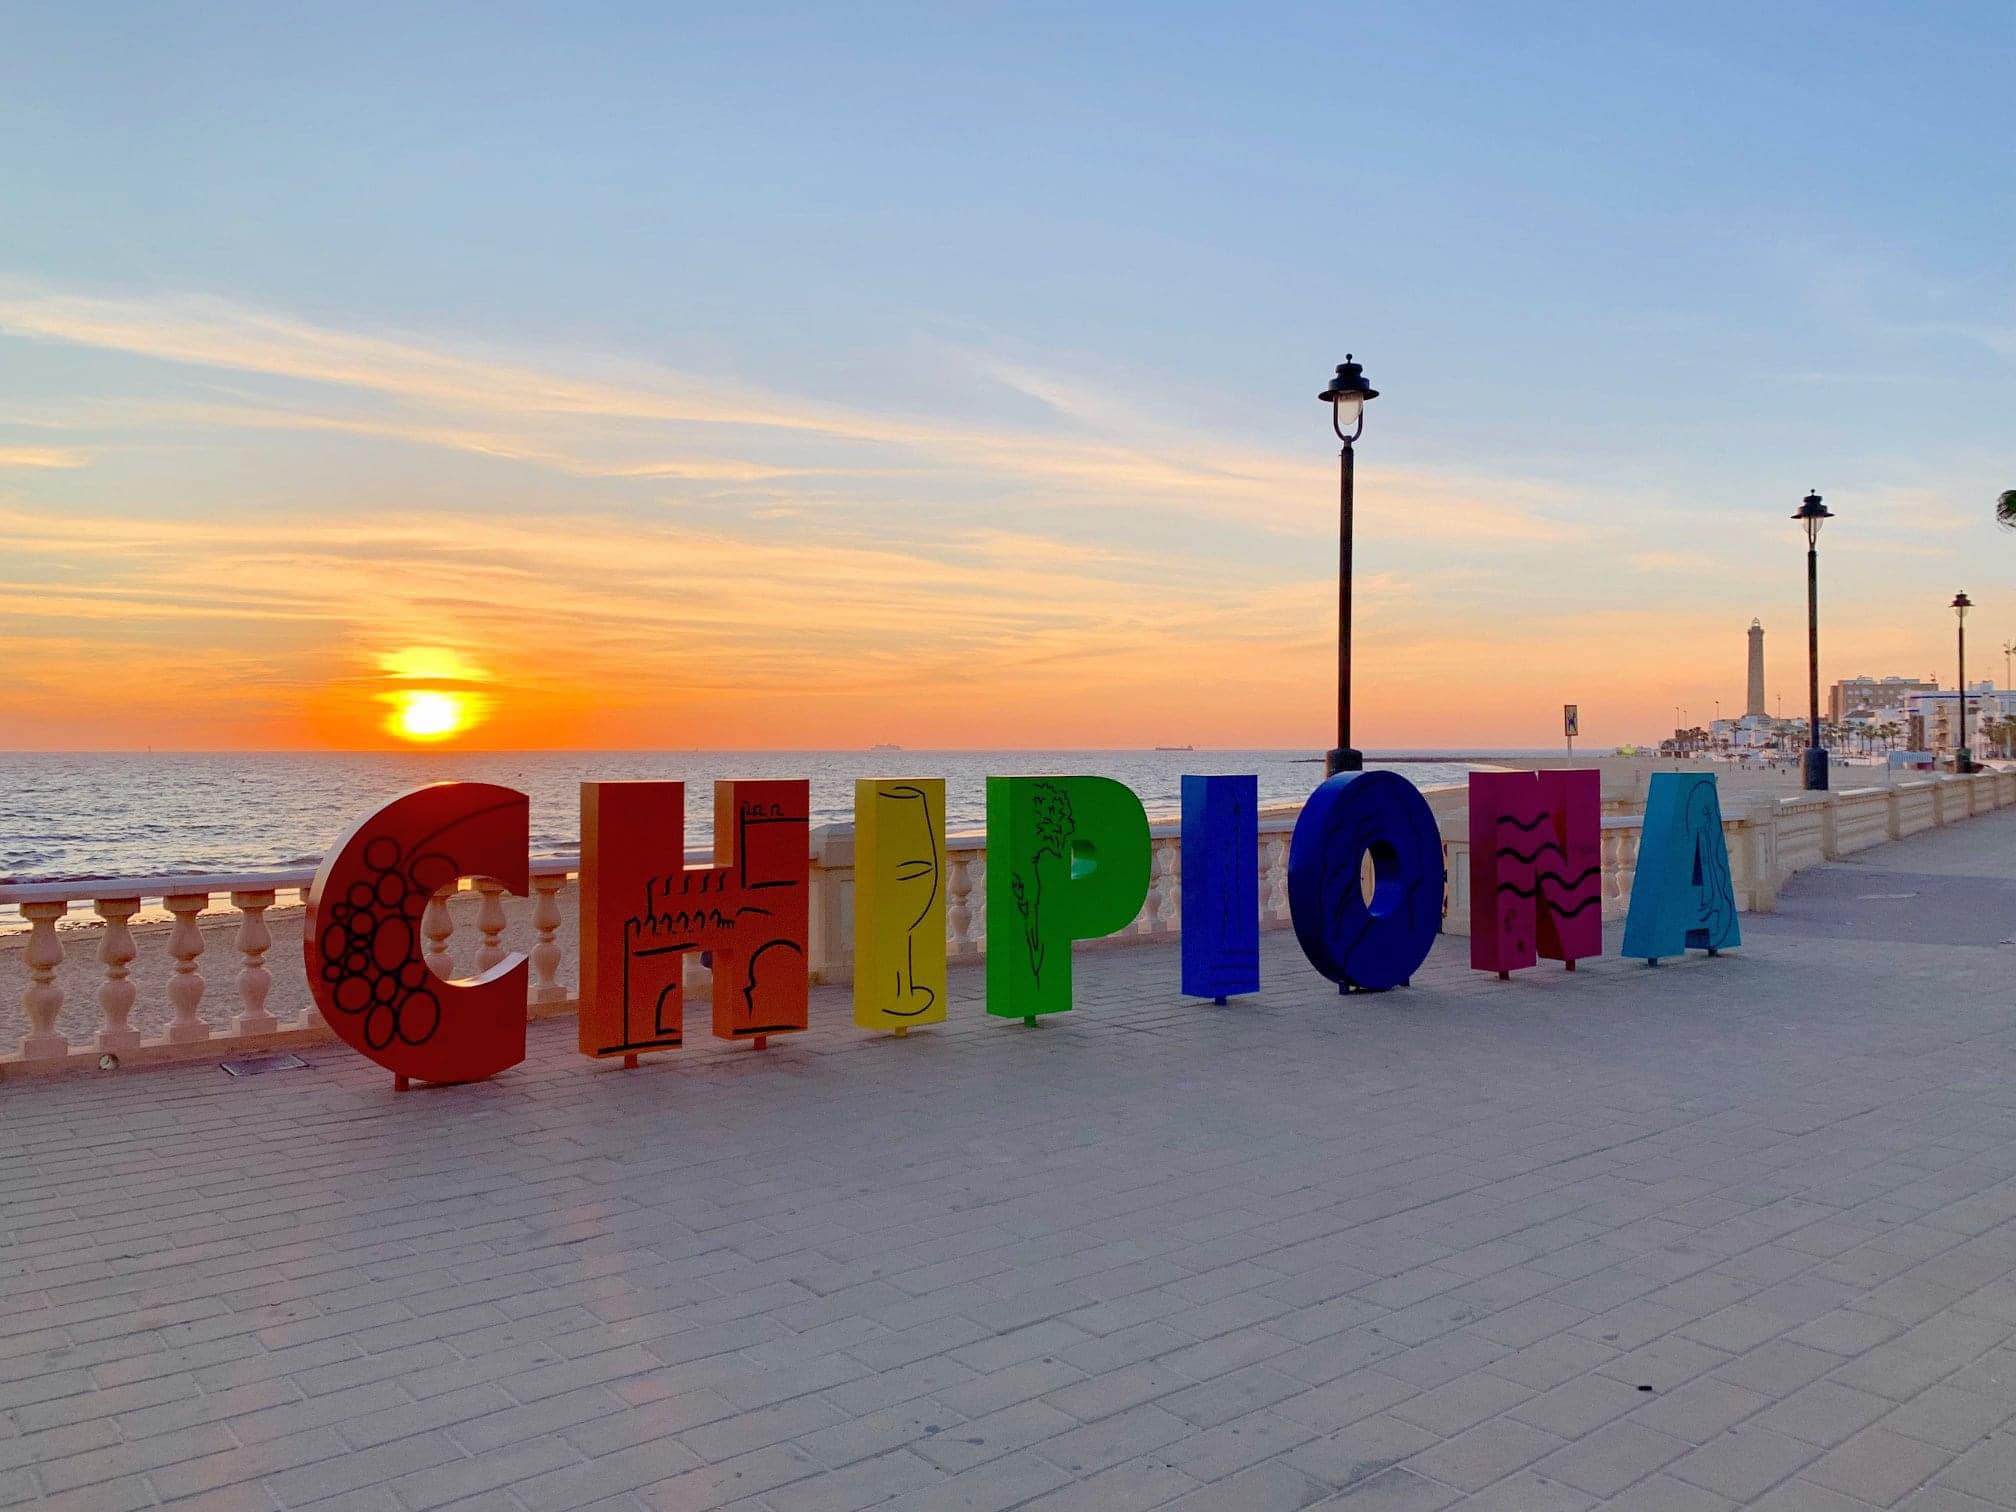 La instalación en Chipiona frente a puestas de sol, ideal para 'selfies'.